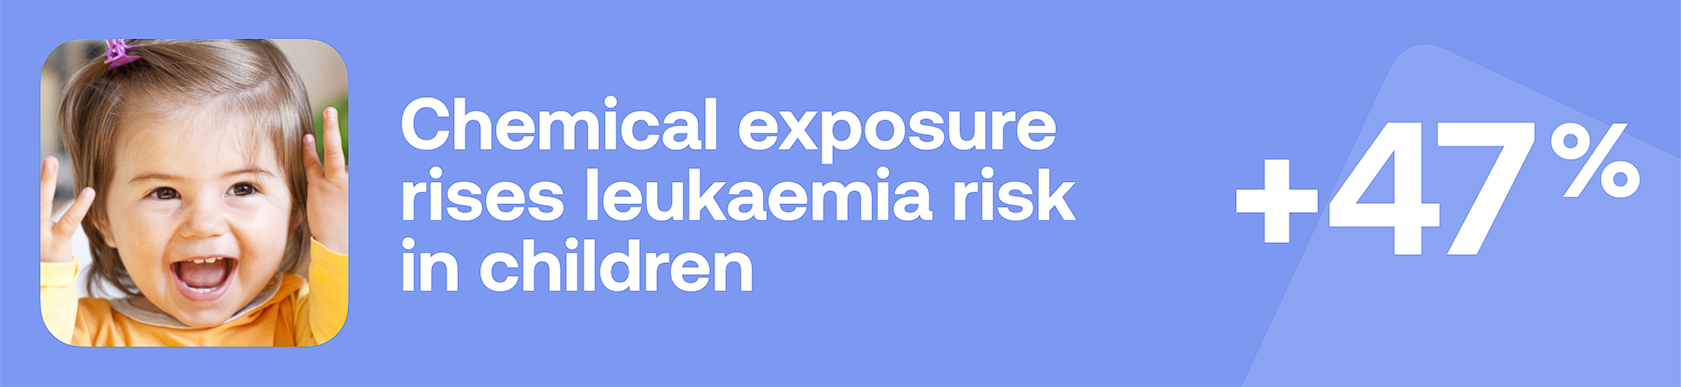 Chemical exposure rises leukaemia risk in children +47%